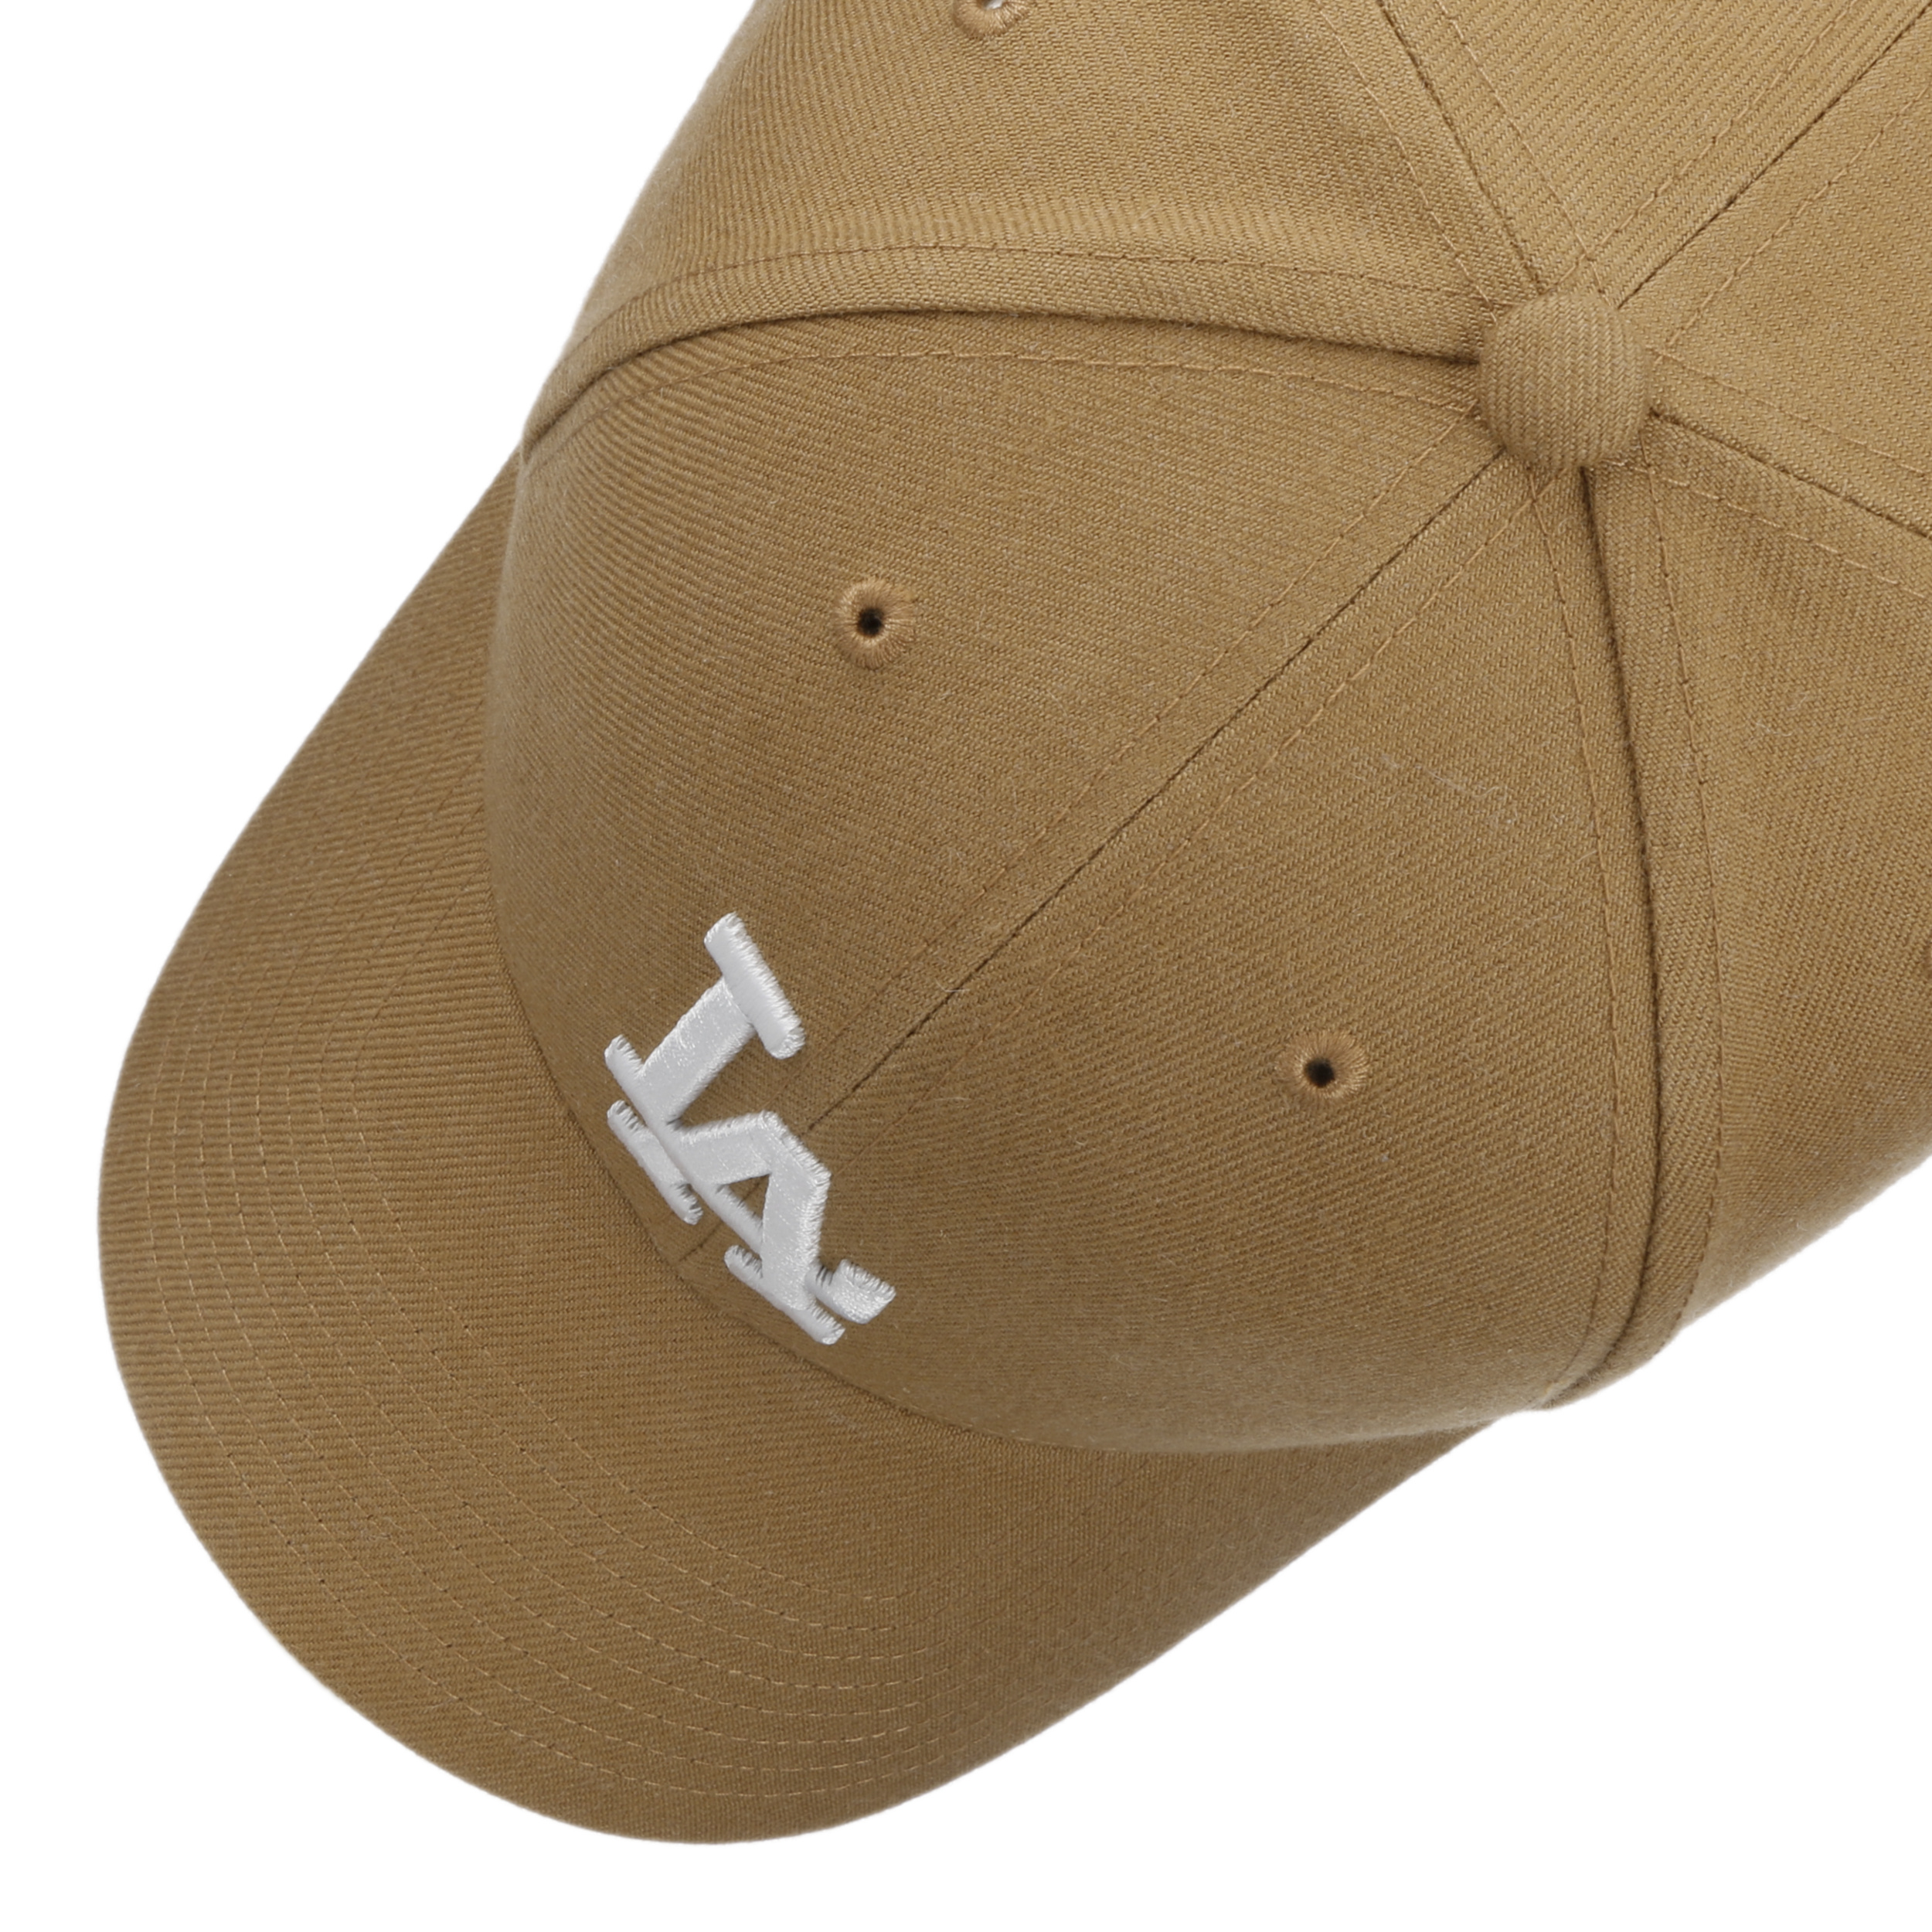 47 Brand Los Angeles LA Dodgers MVP Hat Cap Black/White Outline